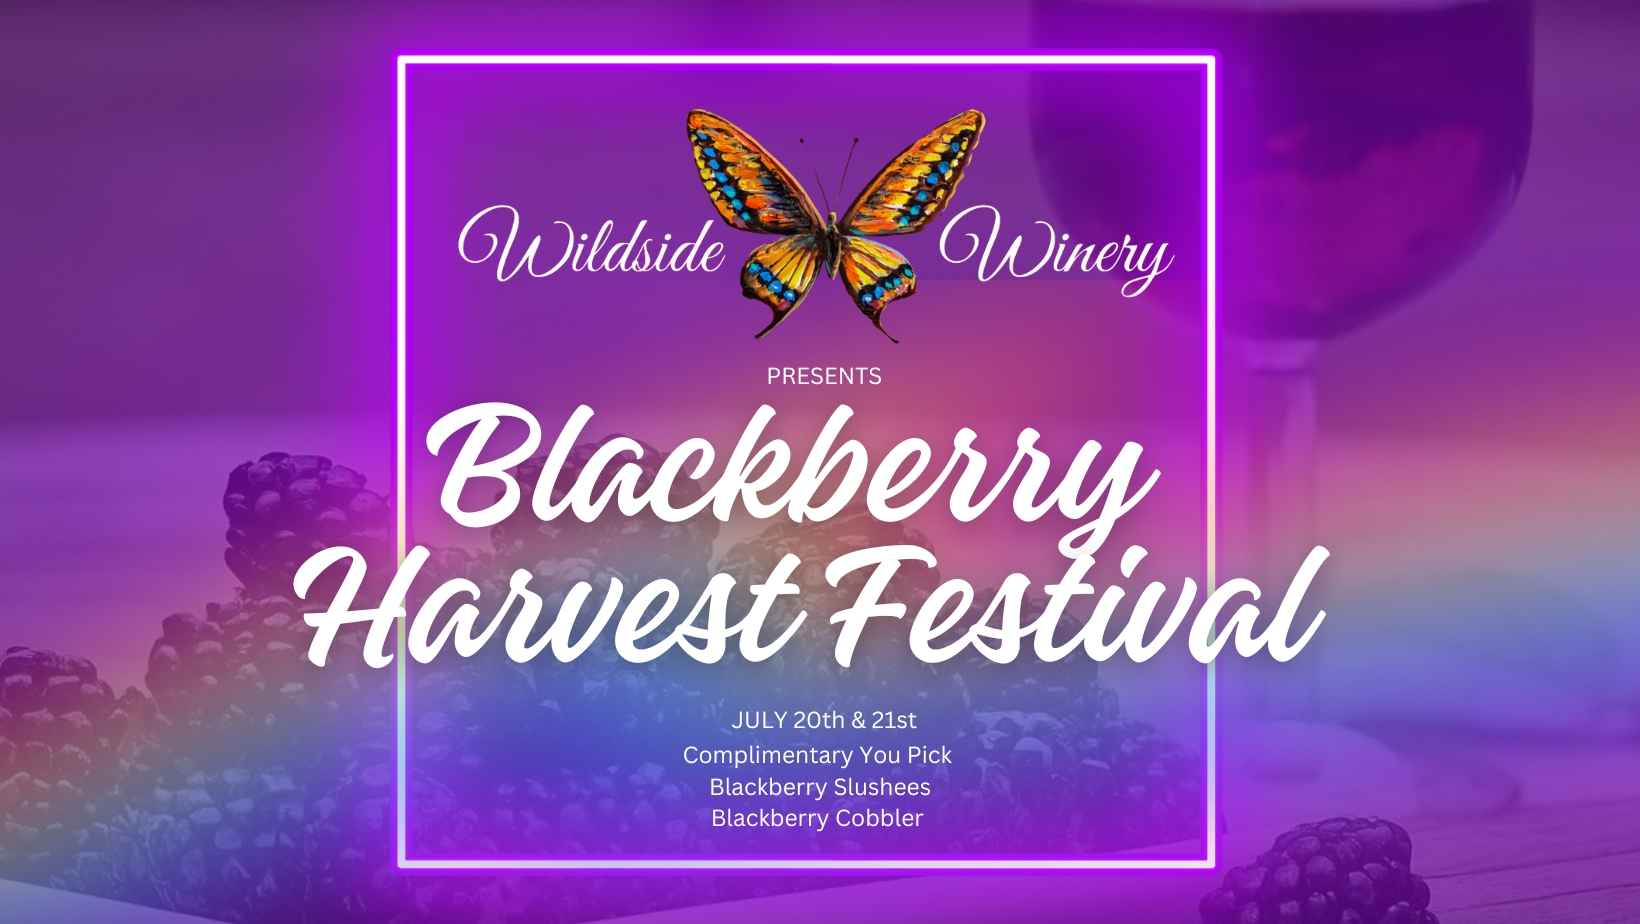 Blackberry Harvest Festival cover image